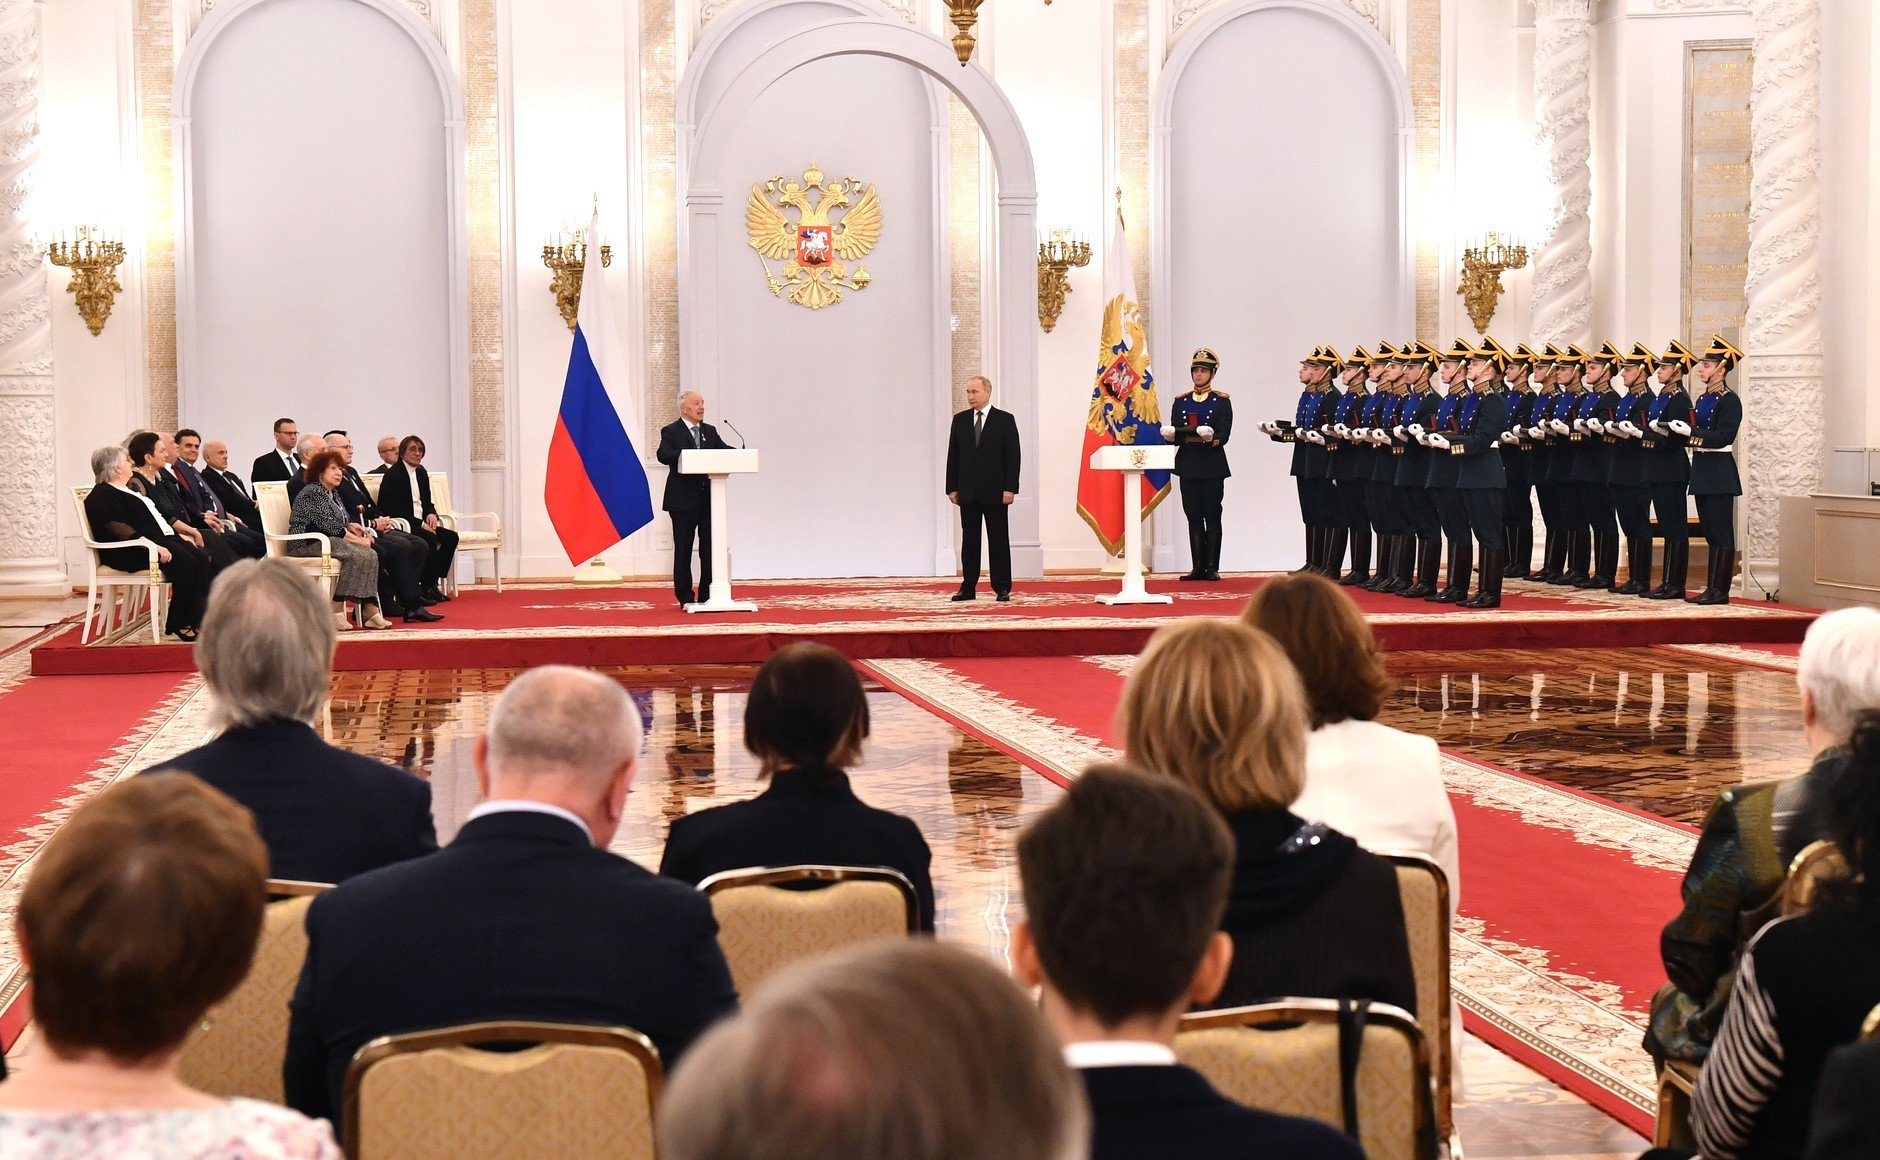 Награждение происходило. Георгиевский зал большого кремлёвского дворца награждение герооев.